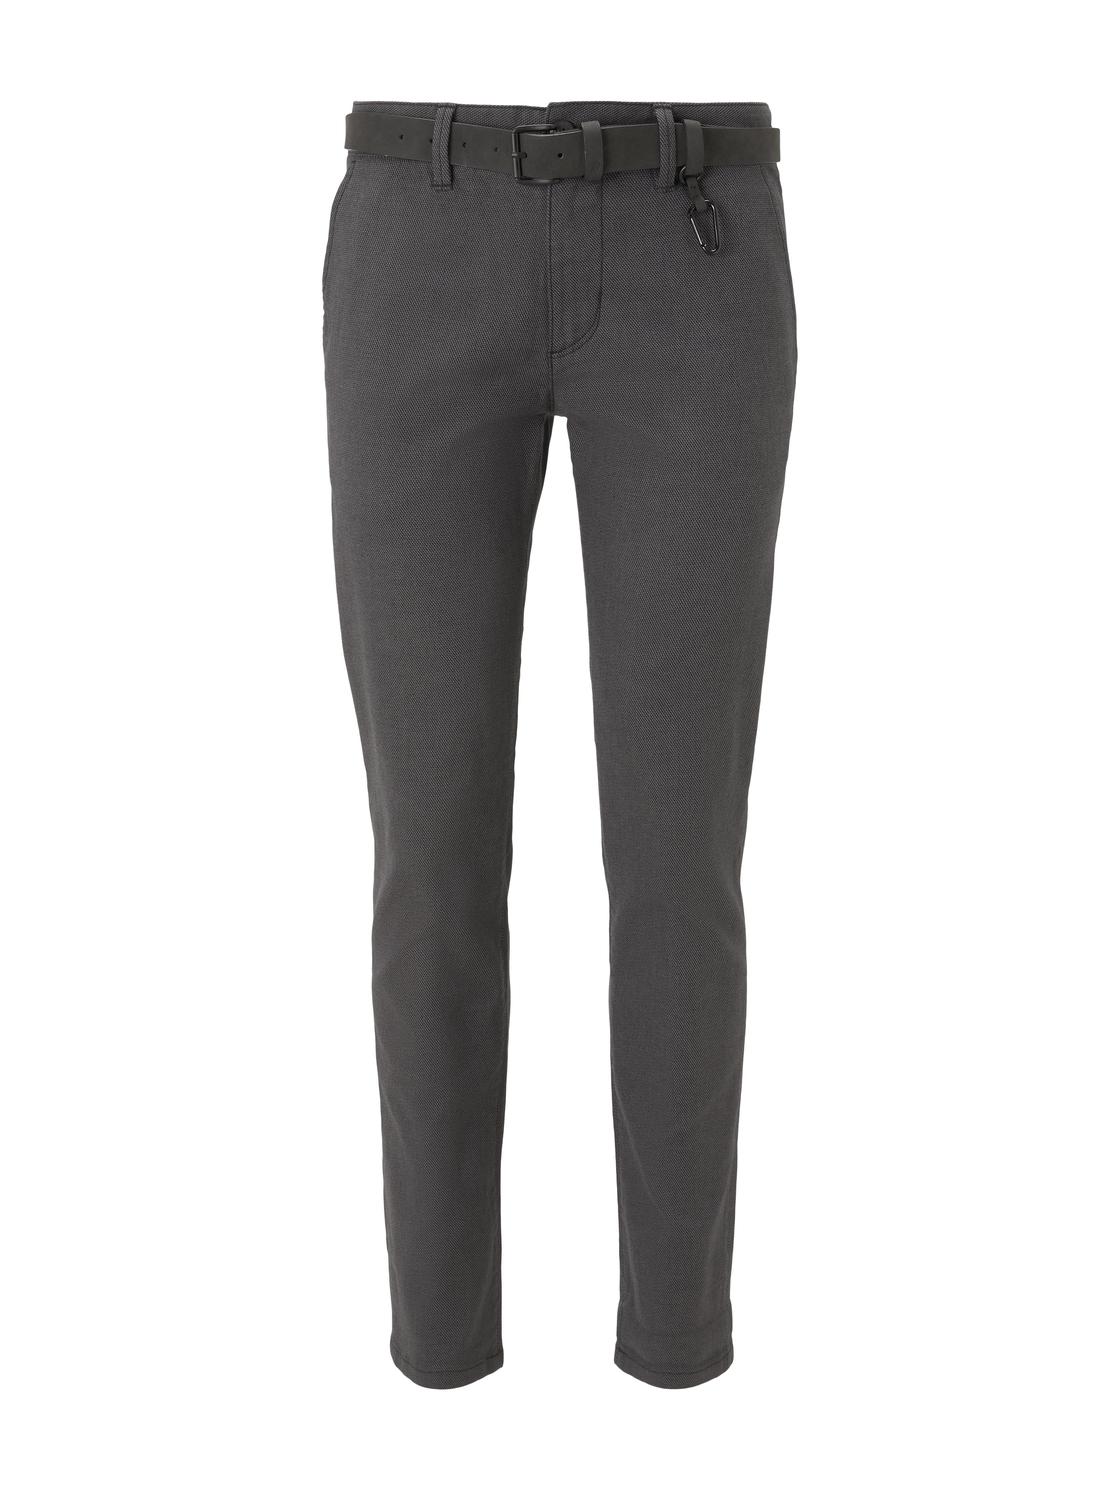 Тканевые брюки TOM TAILOR Denim Stoff/Chino Chino mit Gürtel regular/straight, серый худи tom tailor размер m серый